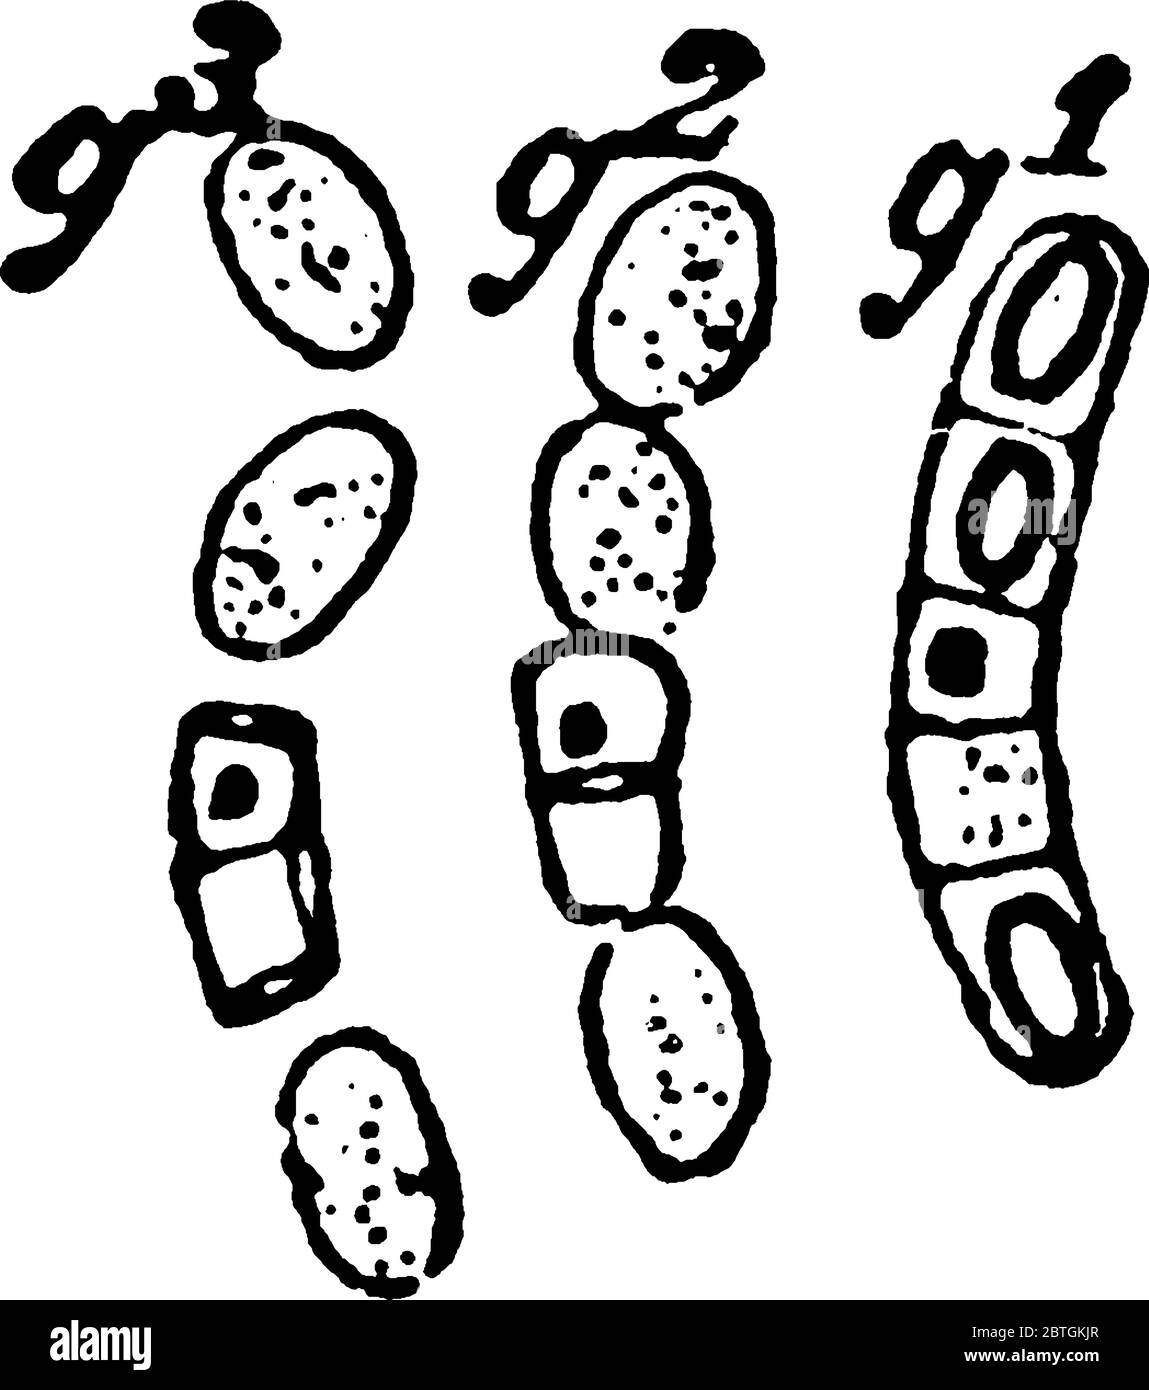 Eine typische Darstellung der frühen Stadien in der Keimung der Sporen, nach dem Trocknen mehrere Tage, Vintage-Strichzeichnung oder Gravur illus Stock Vektor